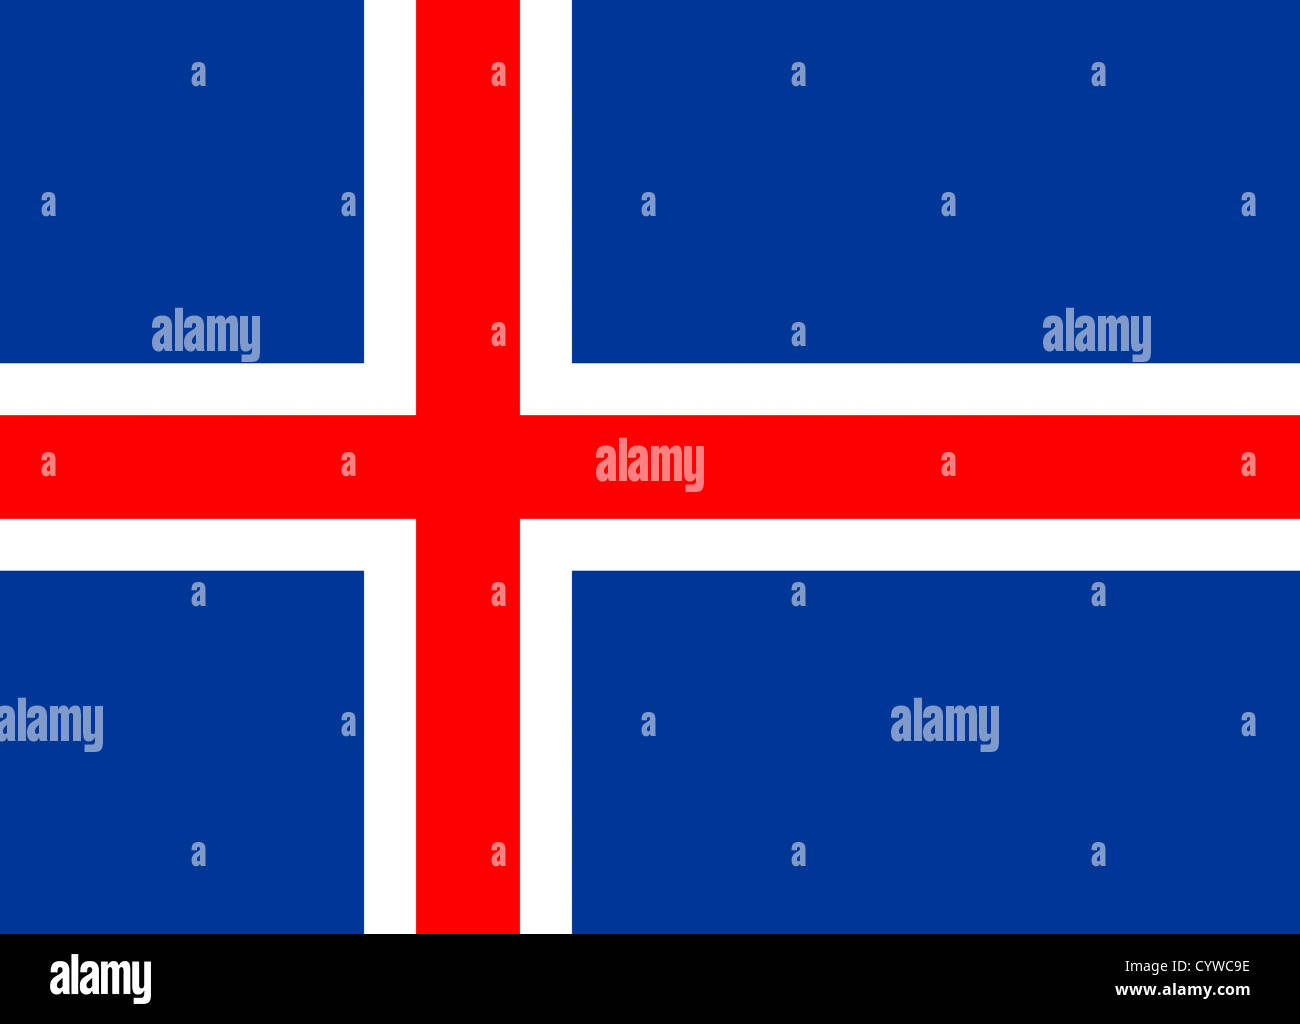 National flag of Iceland. Stock Photo